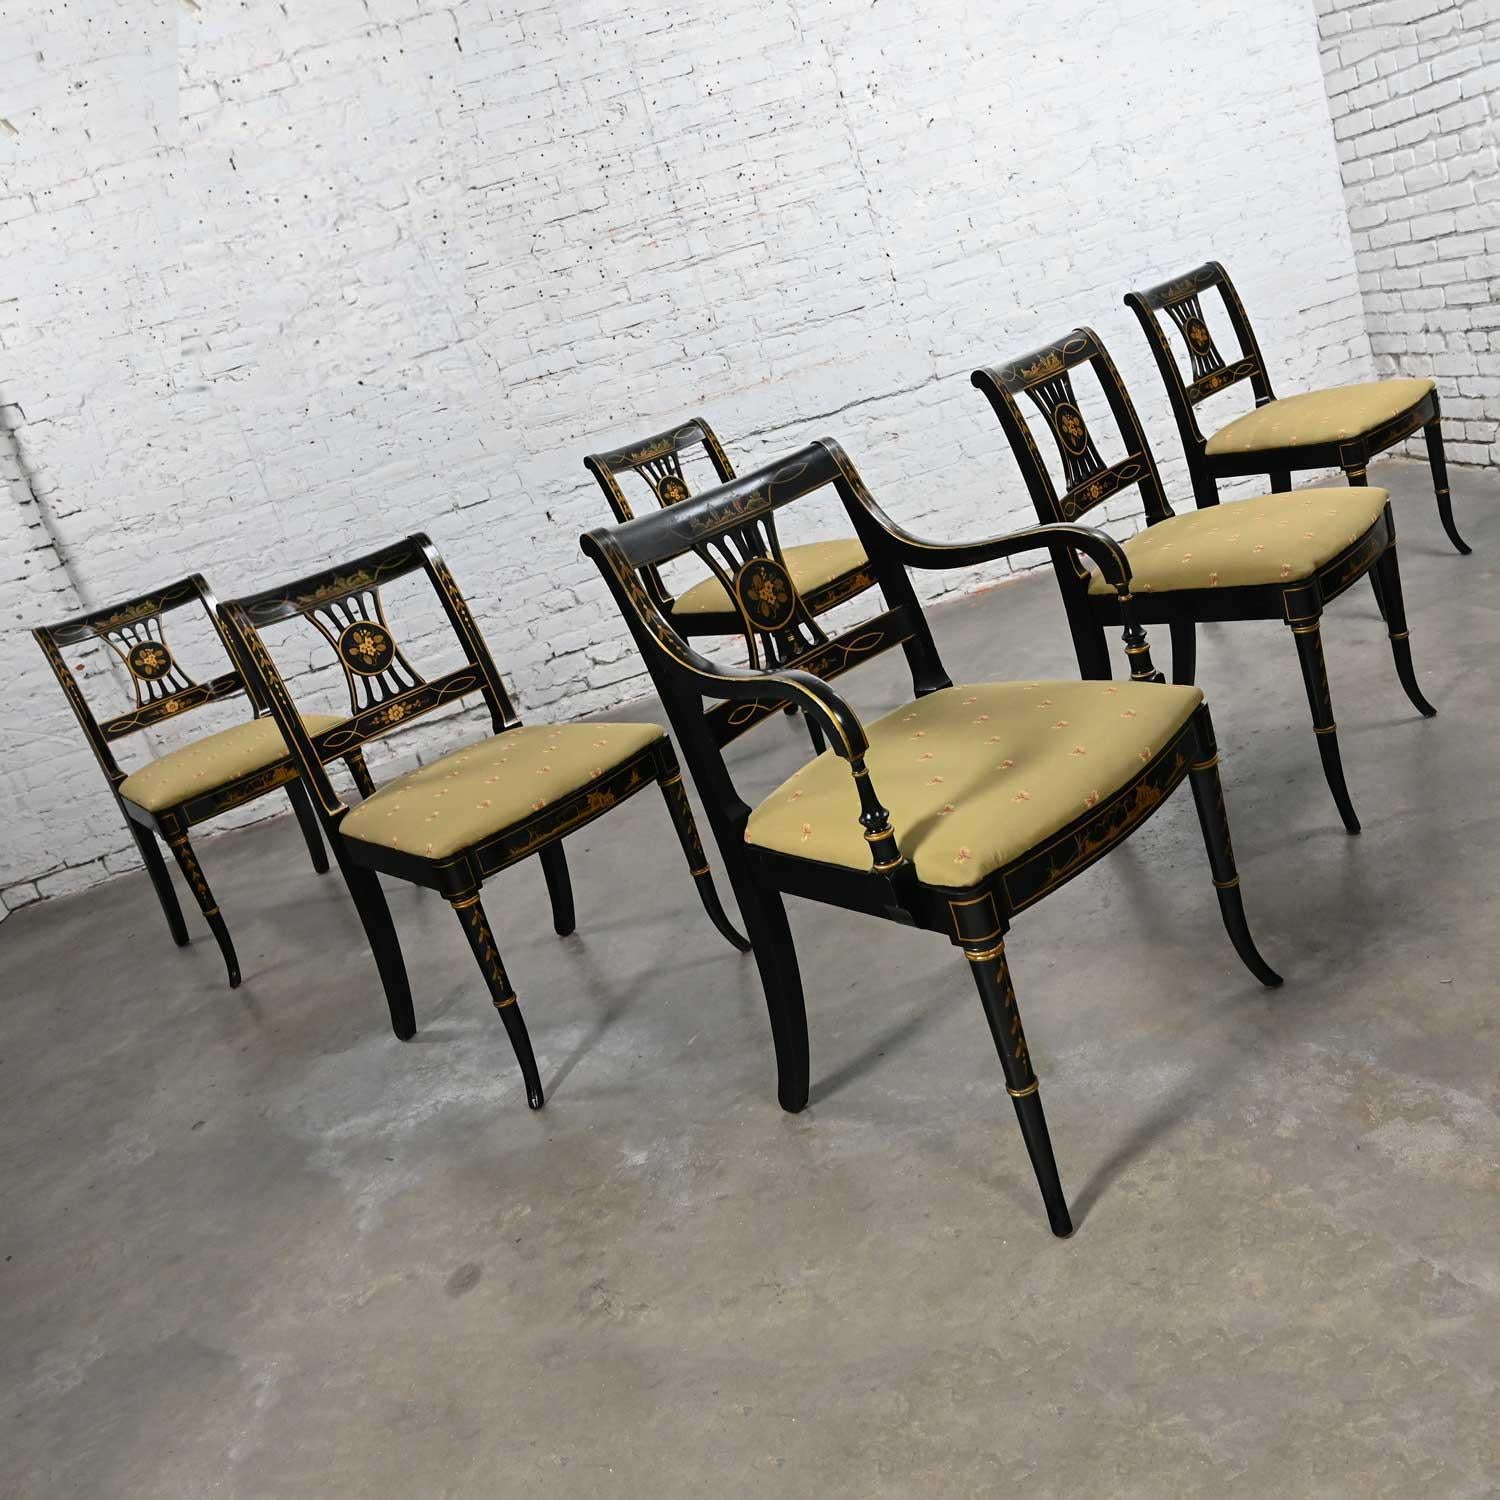 Magnifique chaises de style Régence Chinoiserie Union National Inc patinées, peintes en noir et dorées, 5 chaises latérales et 1 fauteuil, ensemble de 6. Très bon état, gardant à l'esprit qu'il s'agit de chaises vintage et non neuves, donc avec des